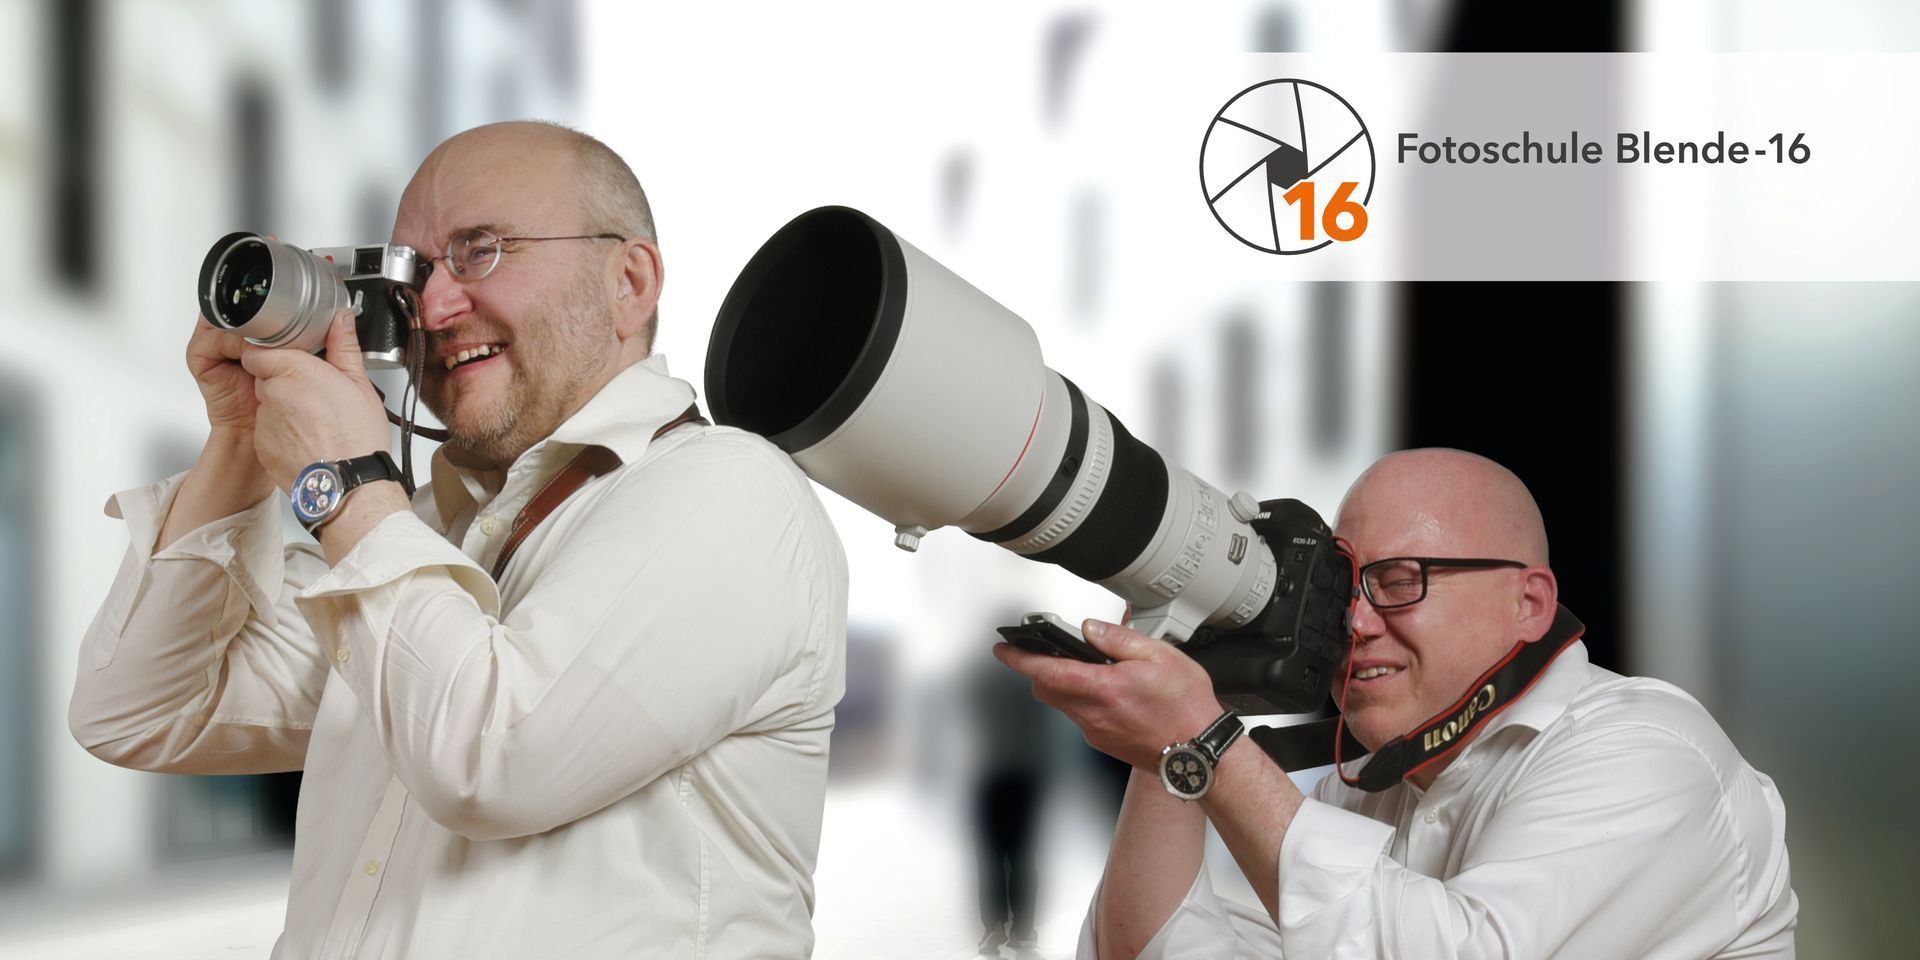 Zwei Fotografen sind auf dem Startseitenbild der Webseite der Fotoschule Blende-16, Fotokurse und Fotoworkshops rund um die digitale Fotografie.